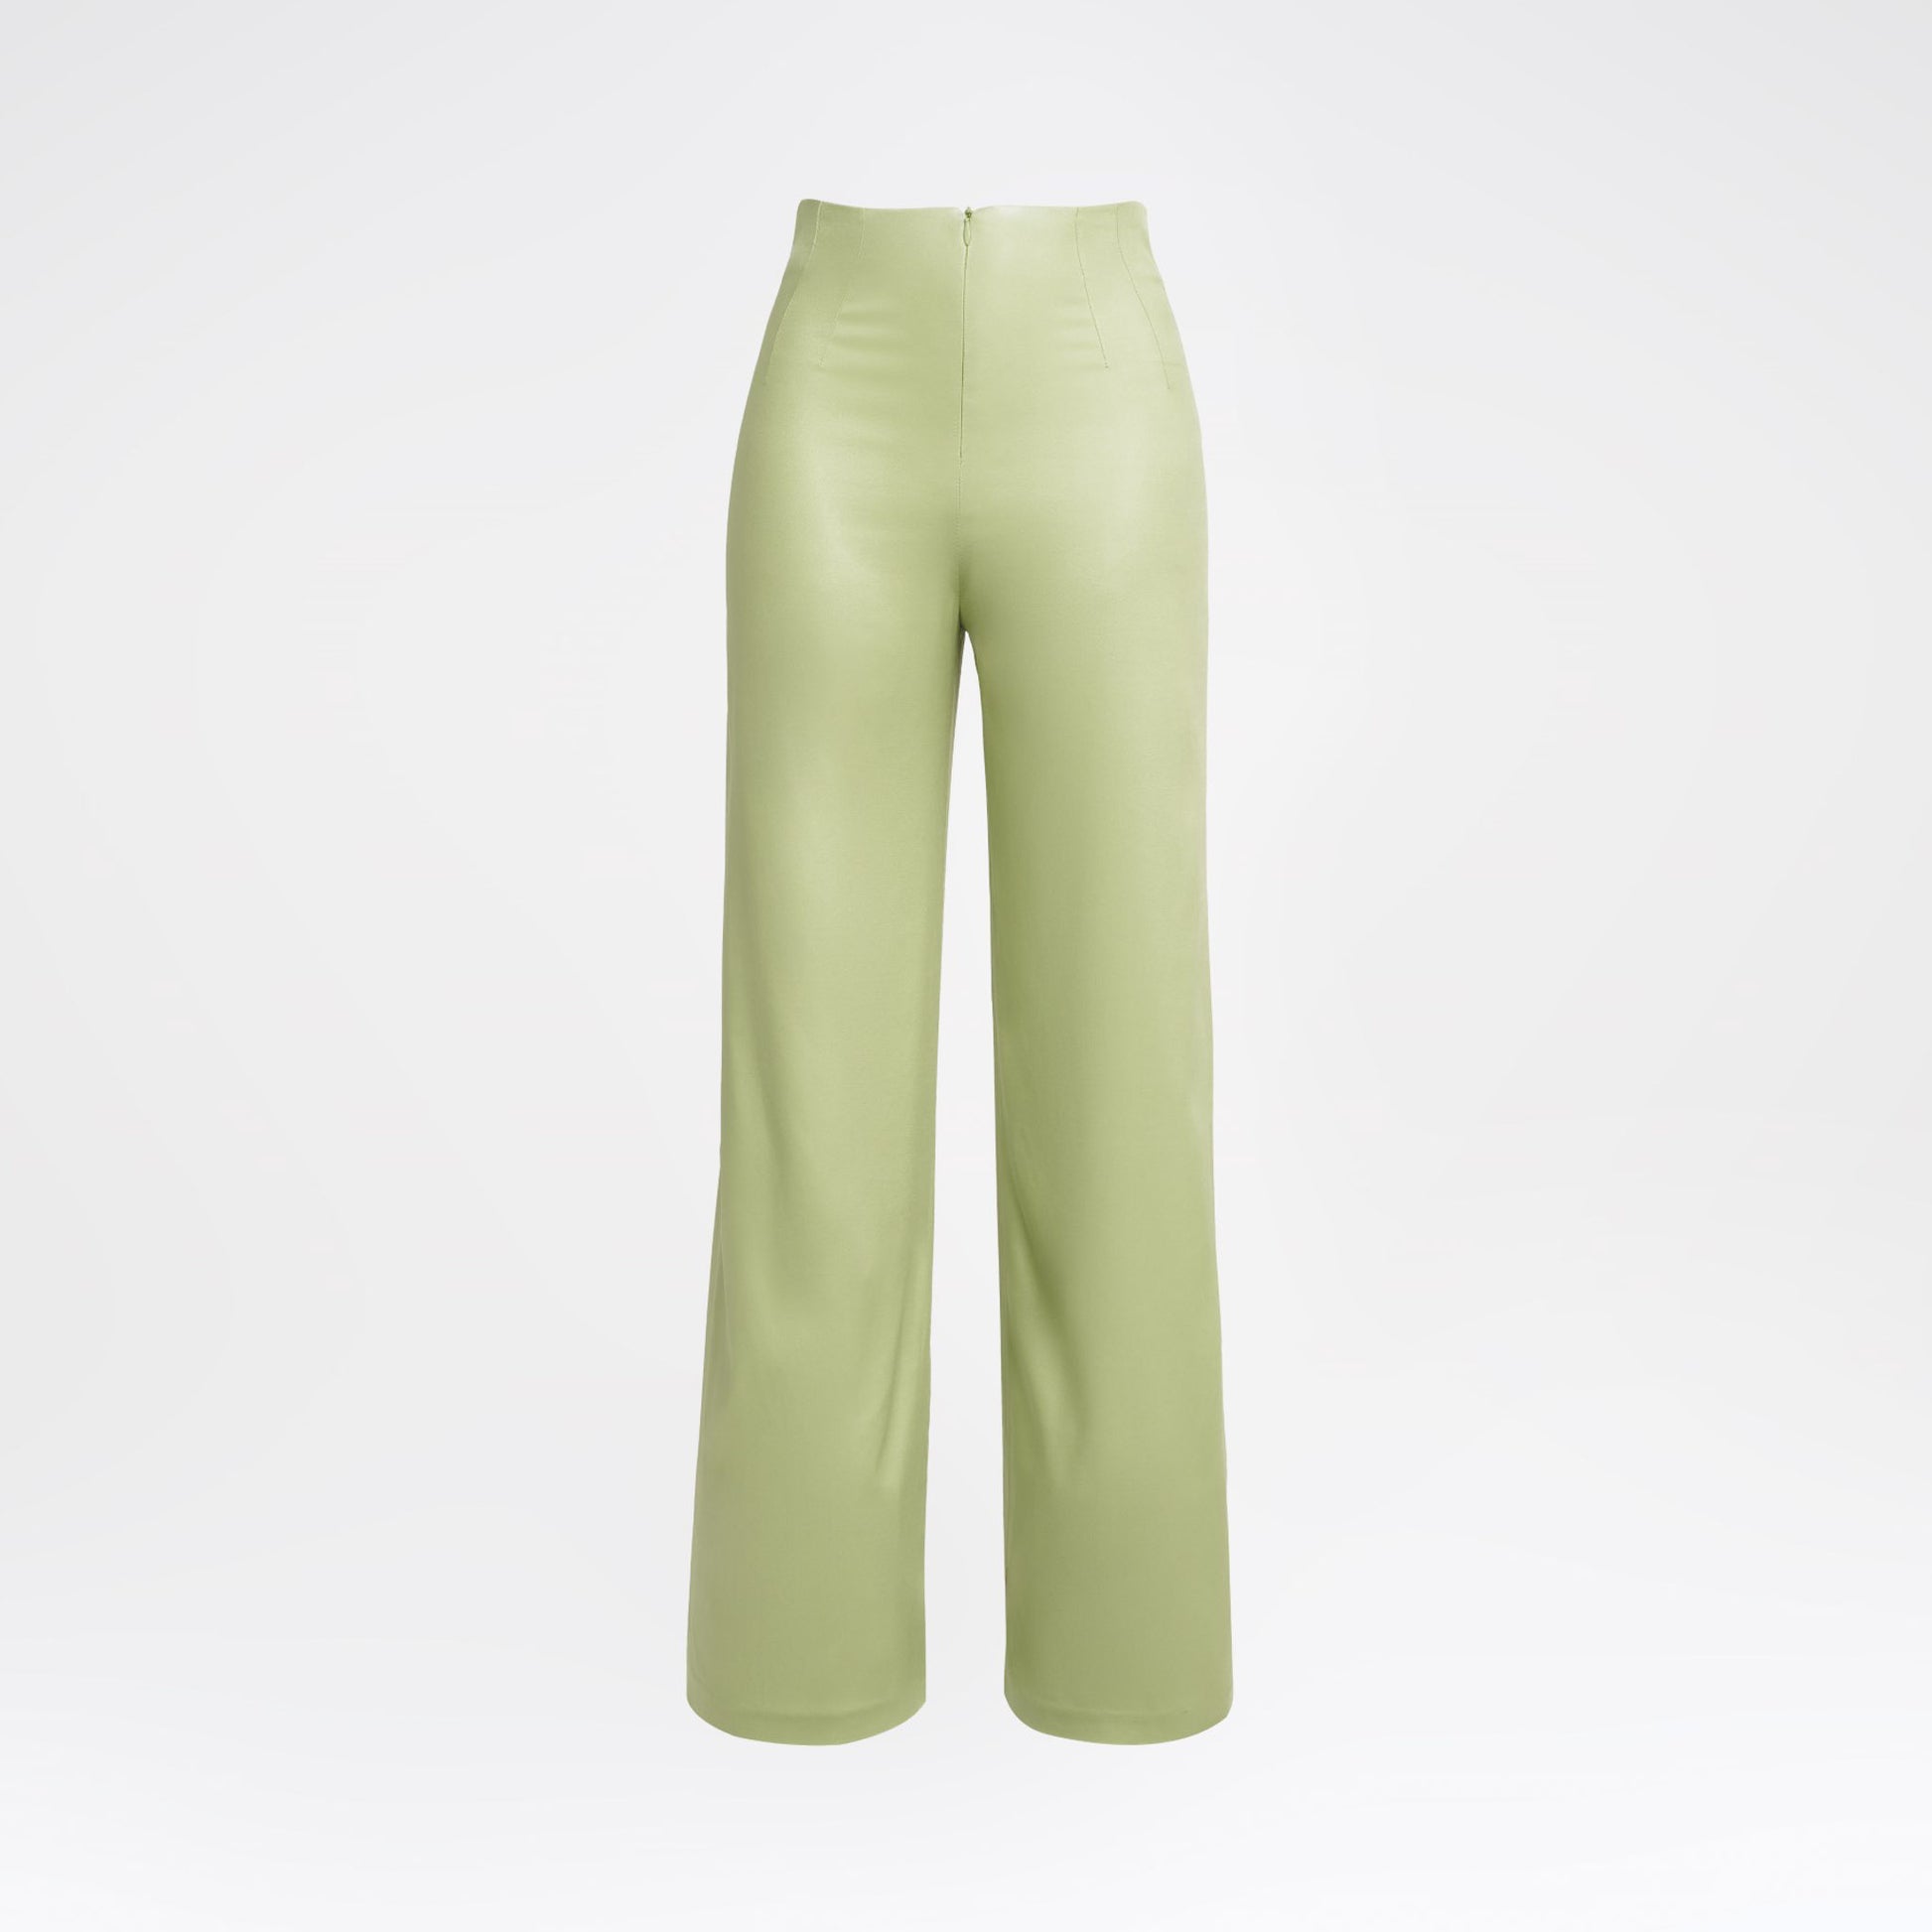 Comprar Pantalon Japan Pana Finest Milan Green